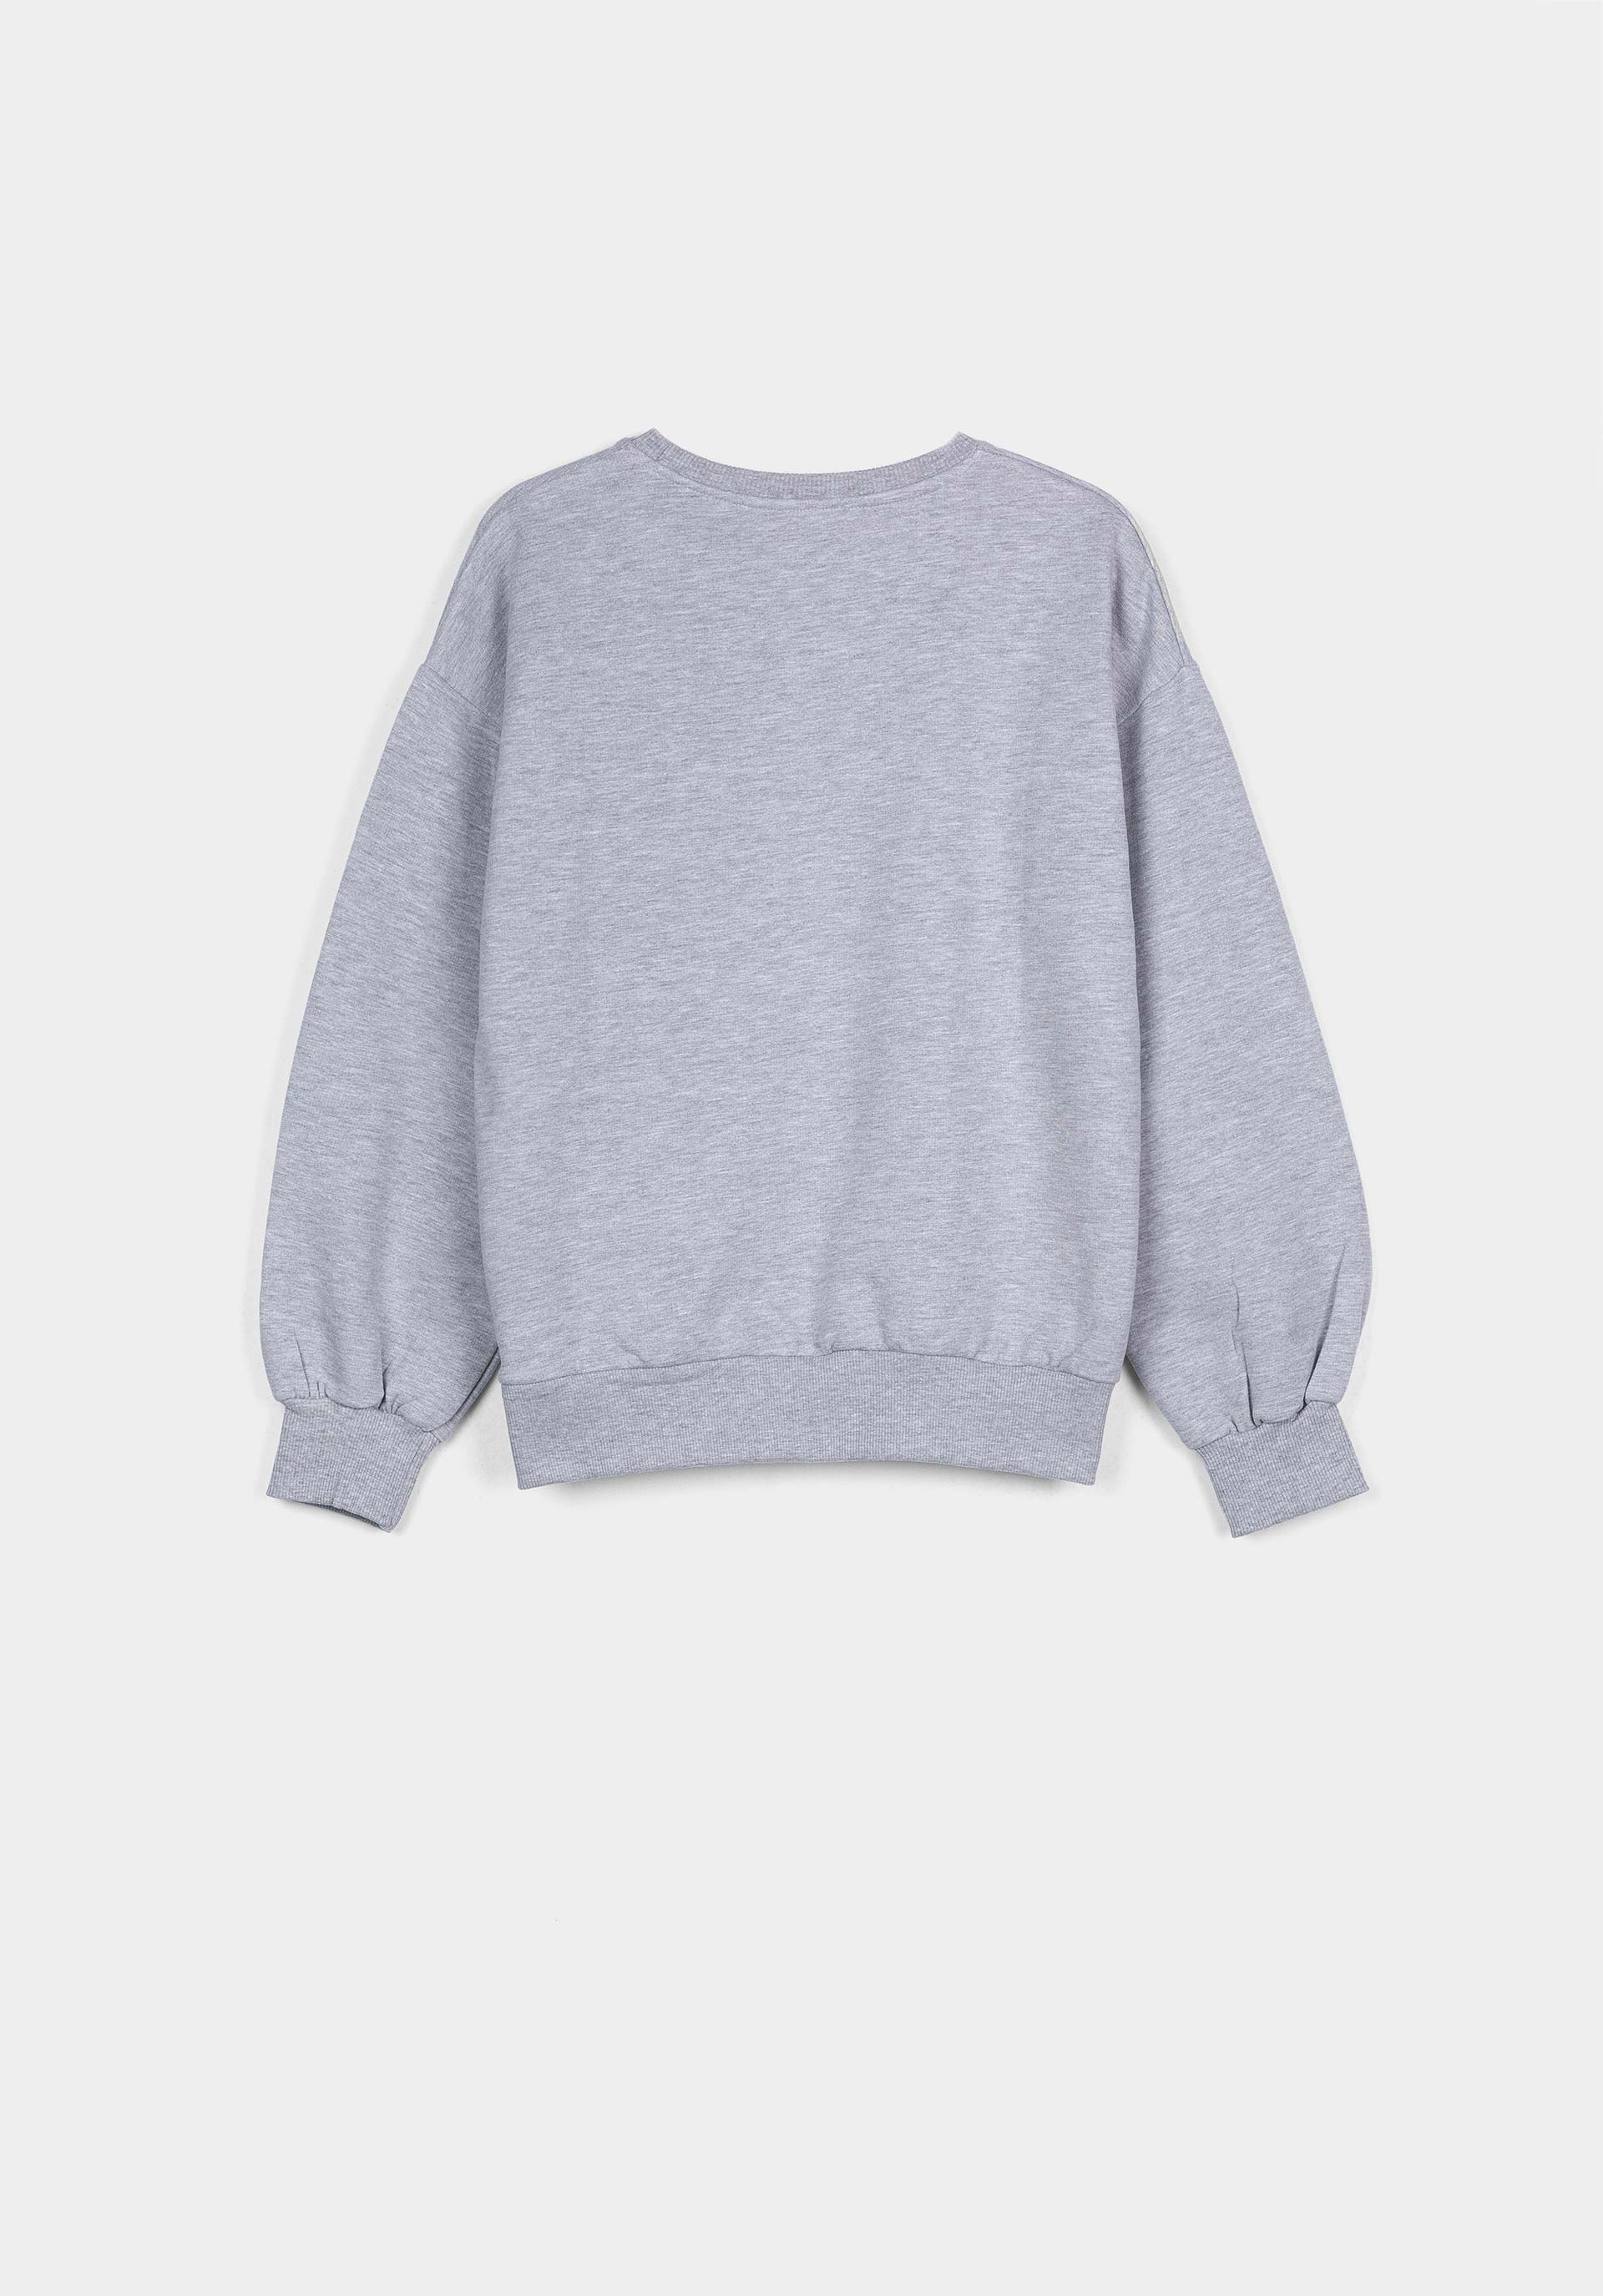 Tiffosi sweater Gabrielle